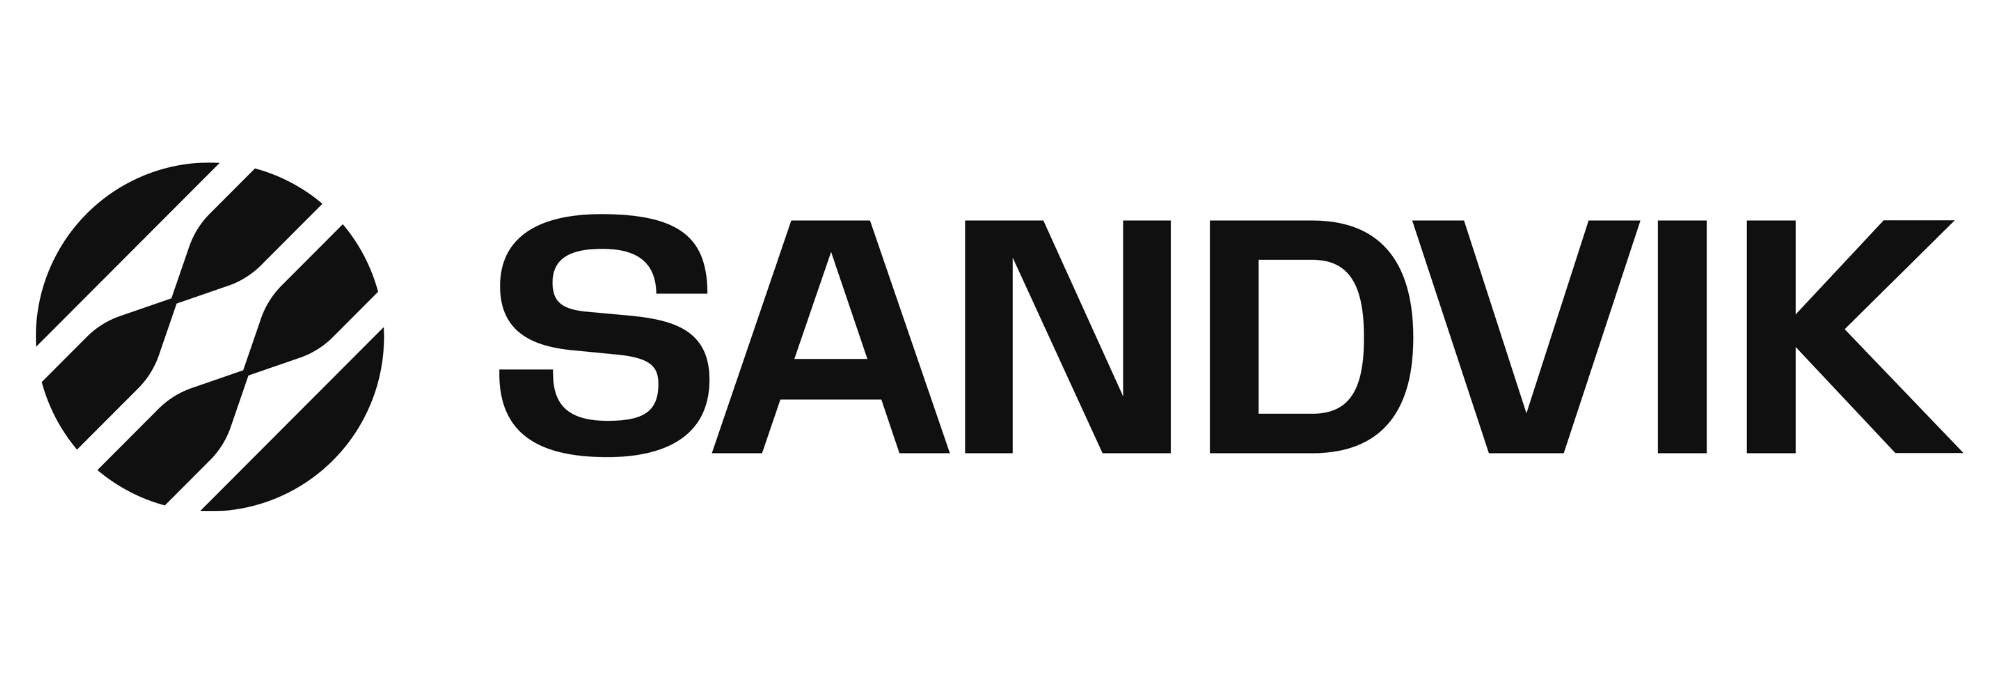 Sandvik - logga